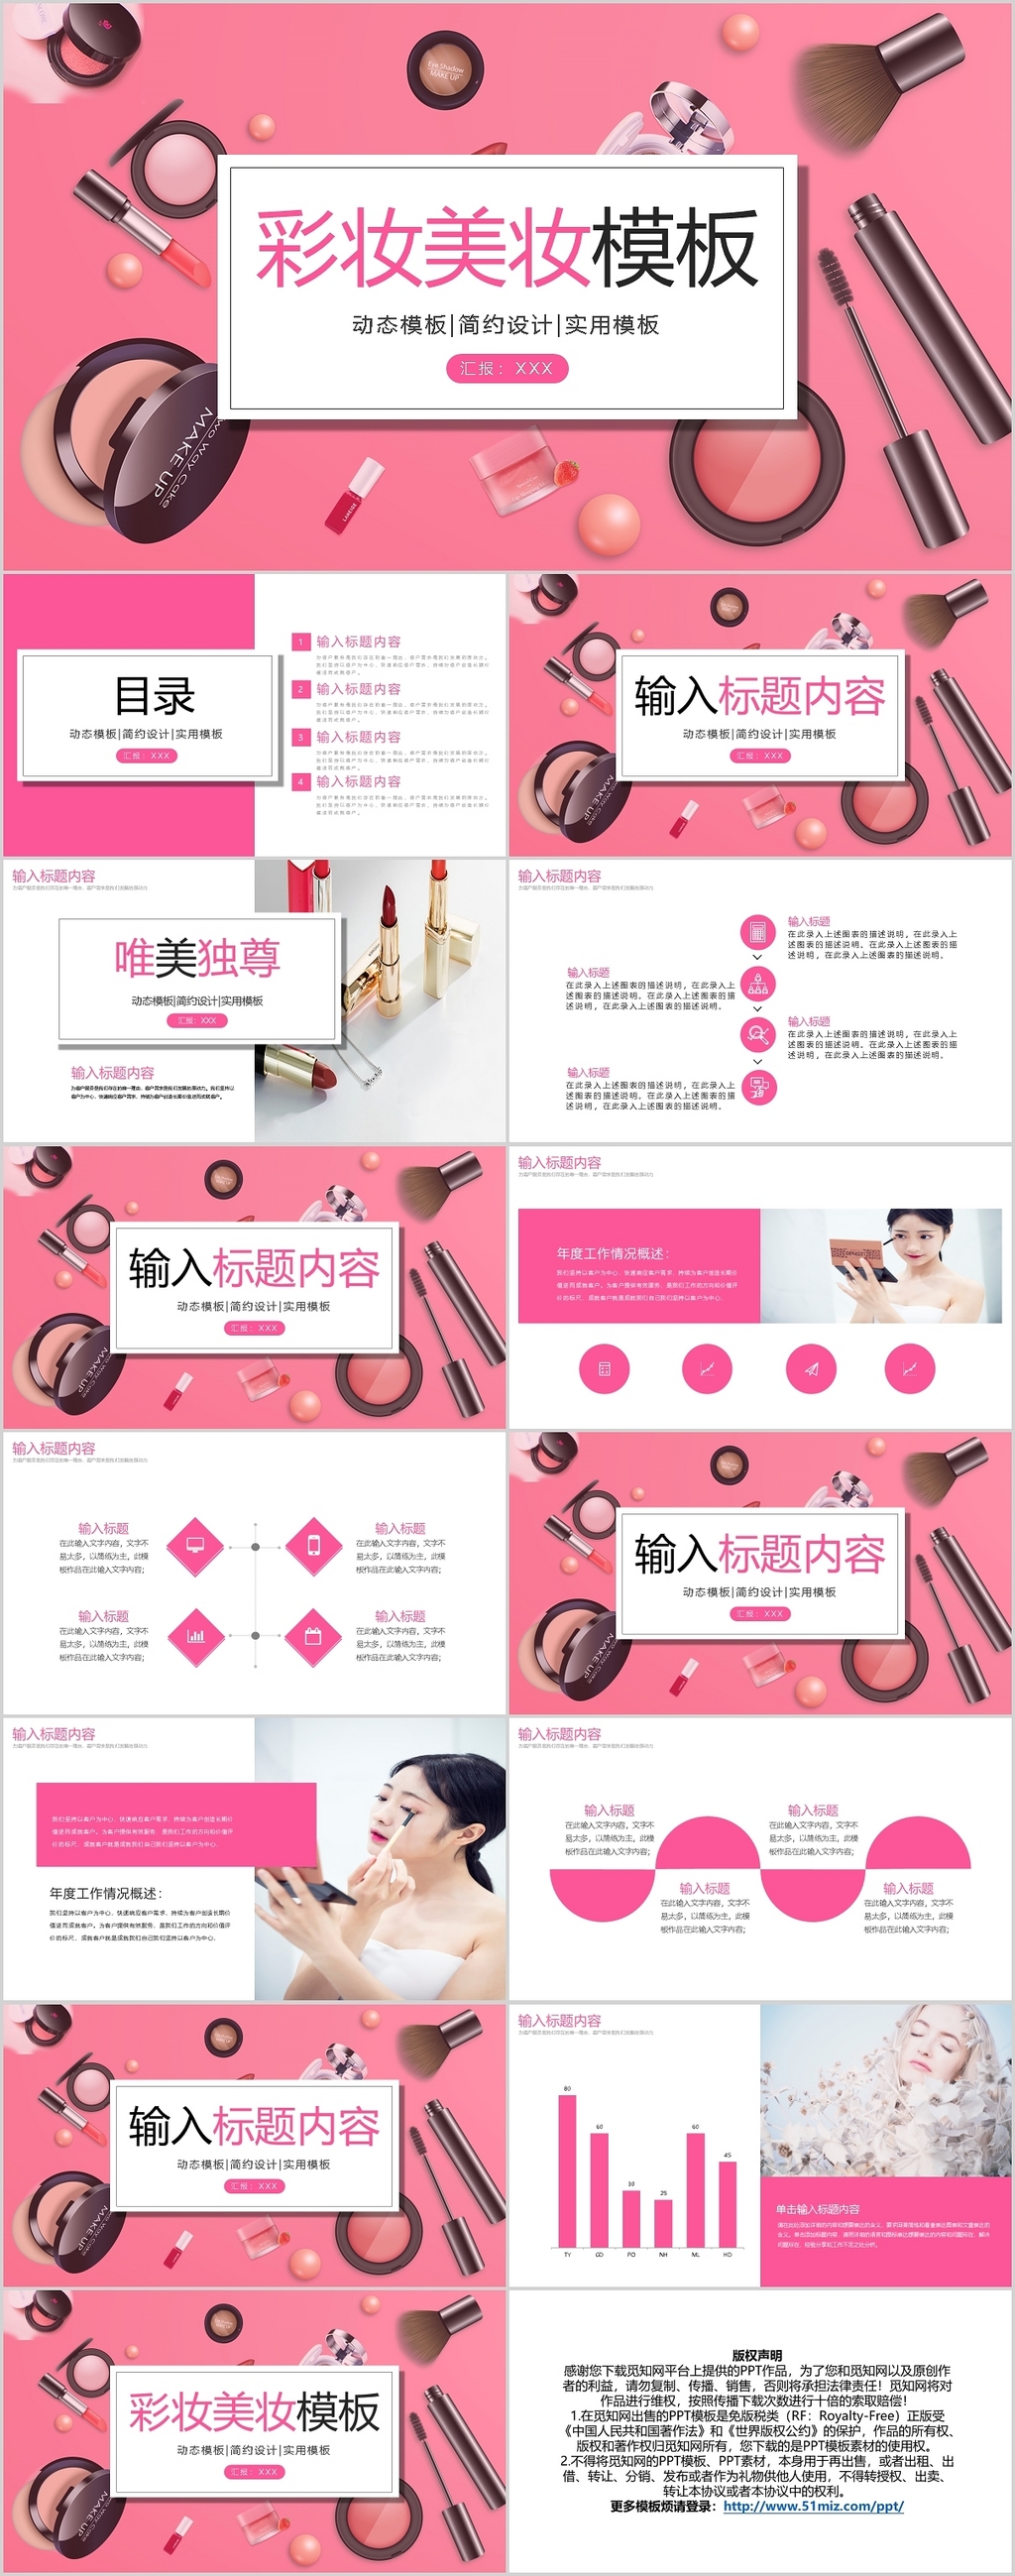 粉色简约彩妆美妆模板PPT模板宣传PPT动态PPT护肤品化妆品